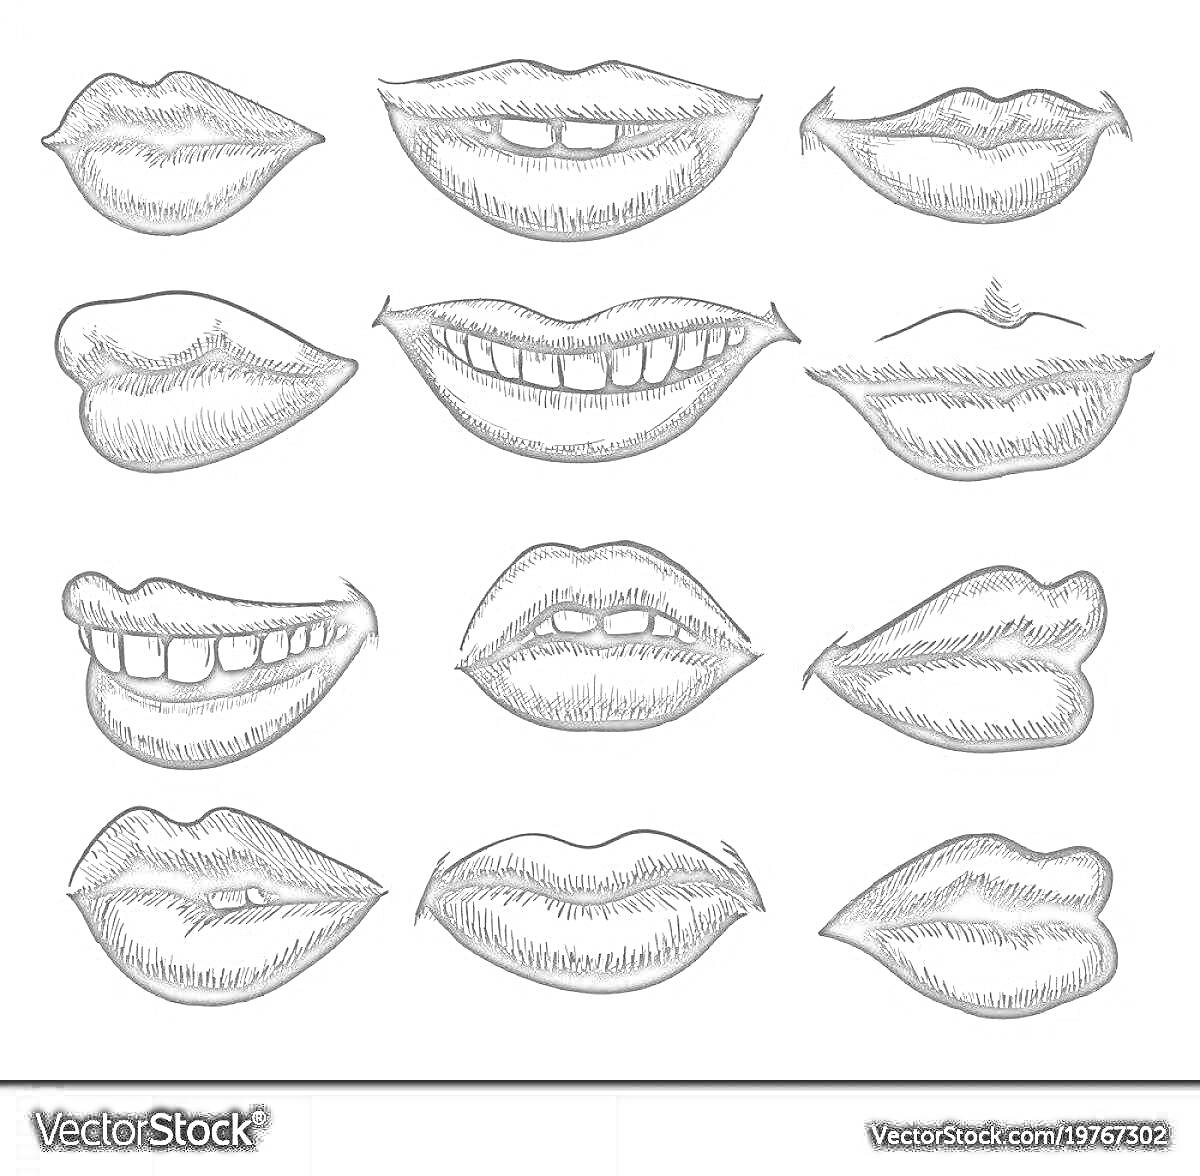 Раскраска Набор эскизов различных форм губ, включая открытые и закрытые, с зубами и без, 12 вариантов